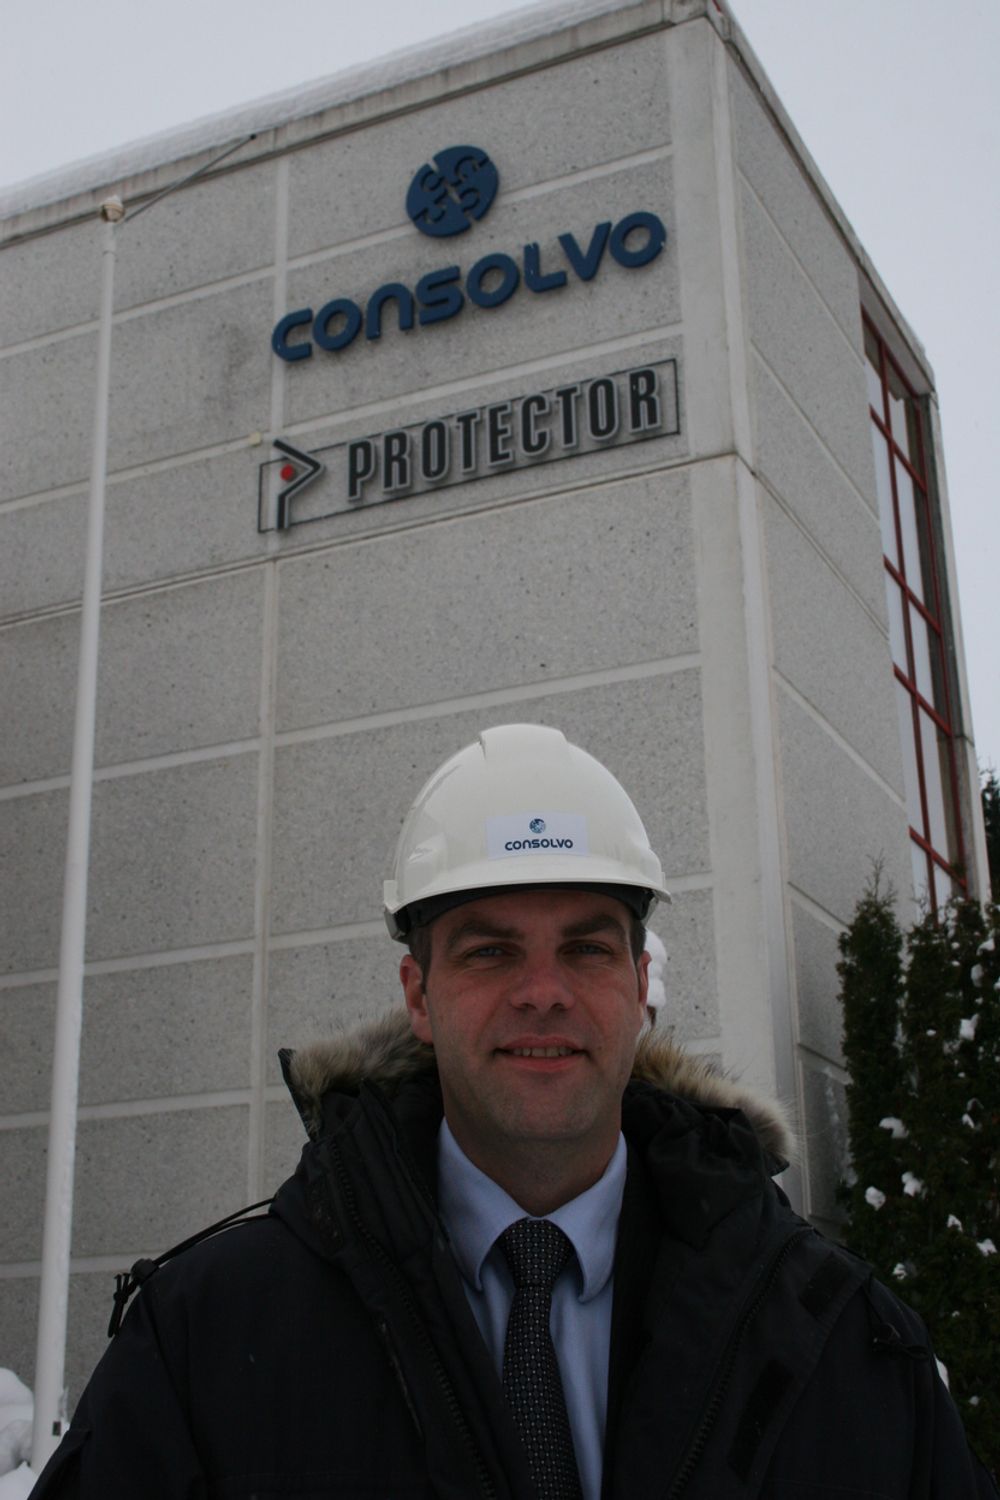 NYTT: Det nye selskapet Consolvo, der Con står for betong og solvo for løsning, blir størst i Norge på betongrehabilitering. Selskapet er en sammenslutning av Vedlikehold-Service Drammen og entreprenørdelen i Protector. Daglig leder er Fredrik Røtter.